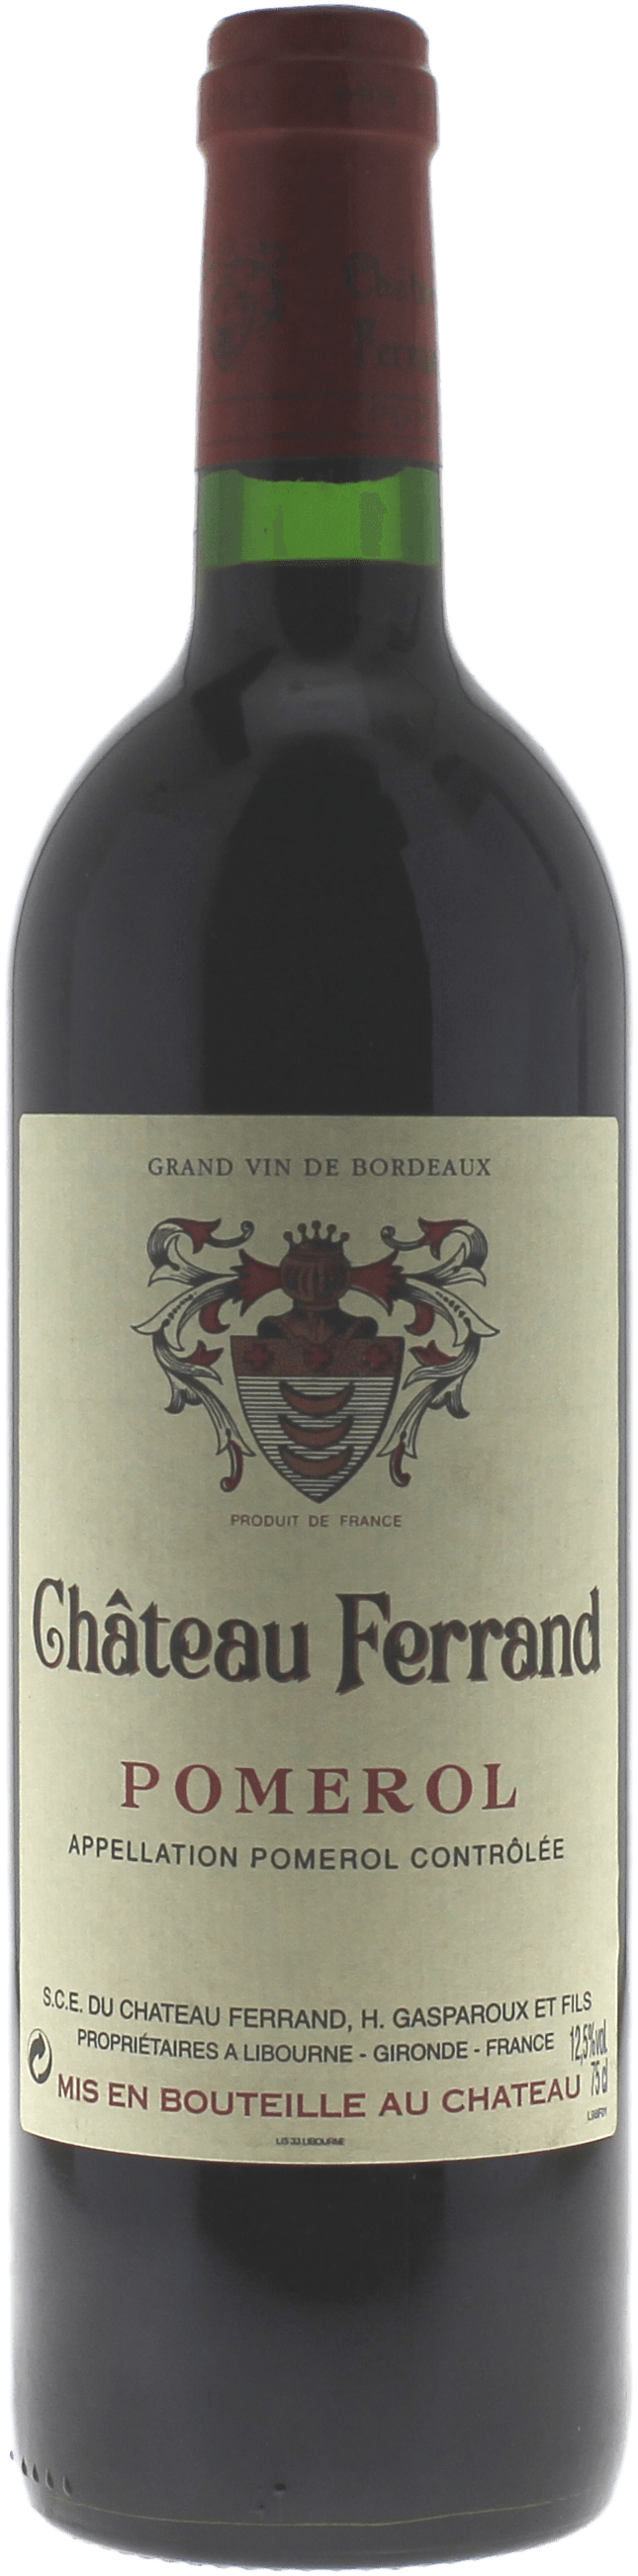 Ferrand pomerol 1998  Pomerol, Bordeaux rouge